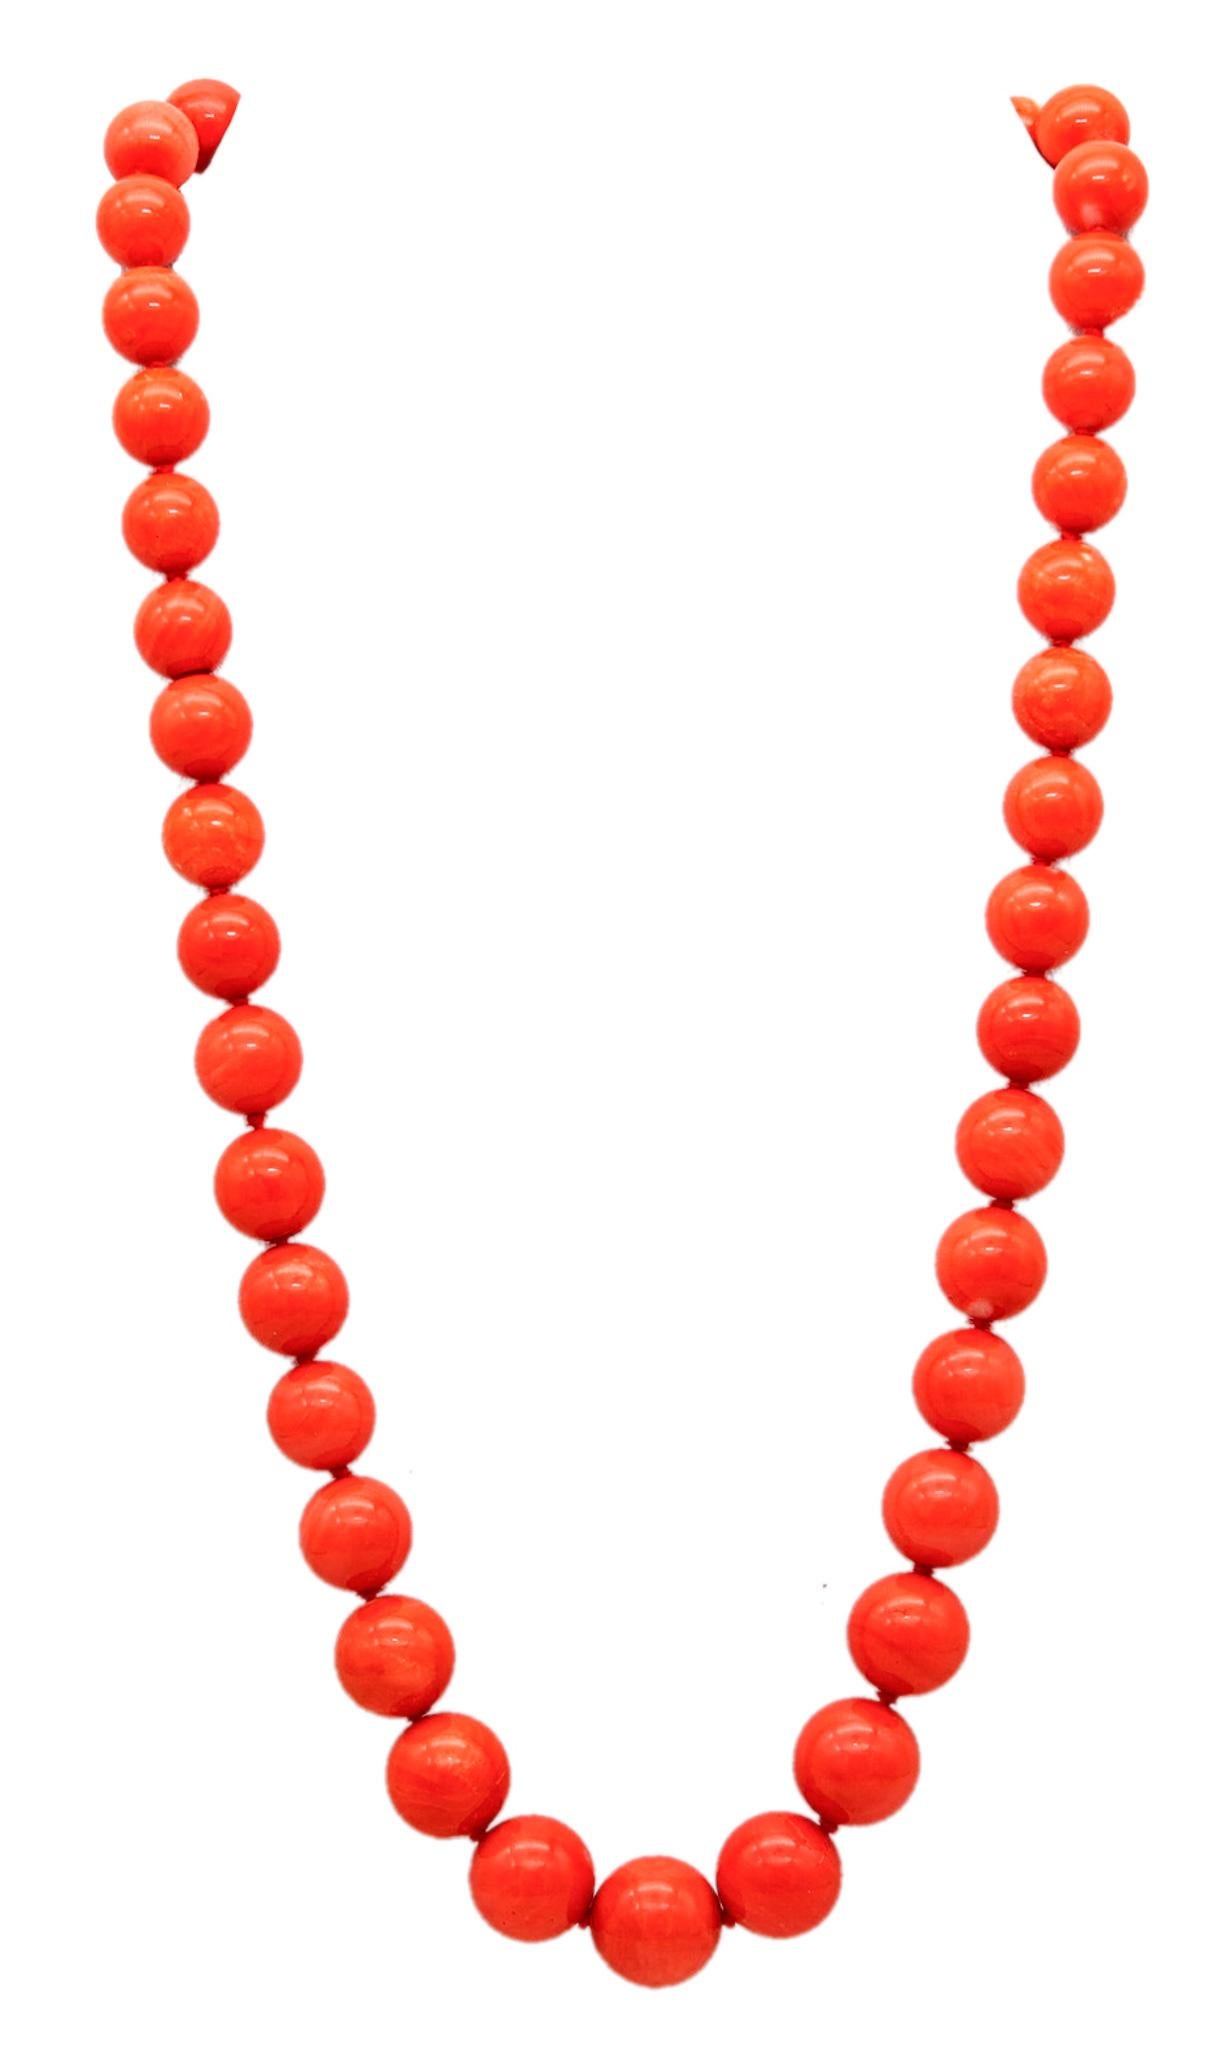 Collier de coraux gradués conçu par Bertoro.

Un collier exceptionnel en corail, créé à Arezzo en Italie dans l'atelier de joaillerie de Bertoro. Ce collier est composé de quarante-trois perles graduées en corail naturel lustré et est muni d'une